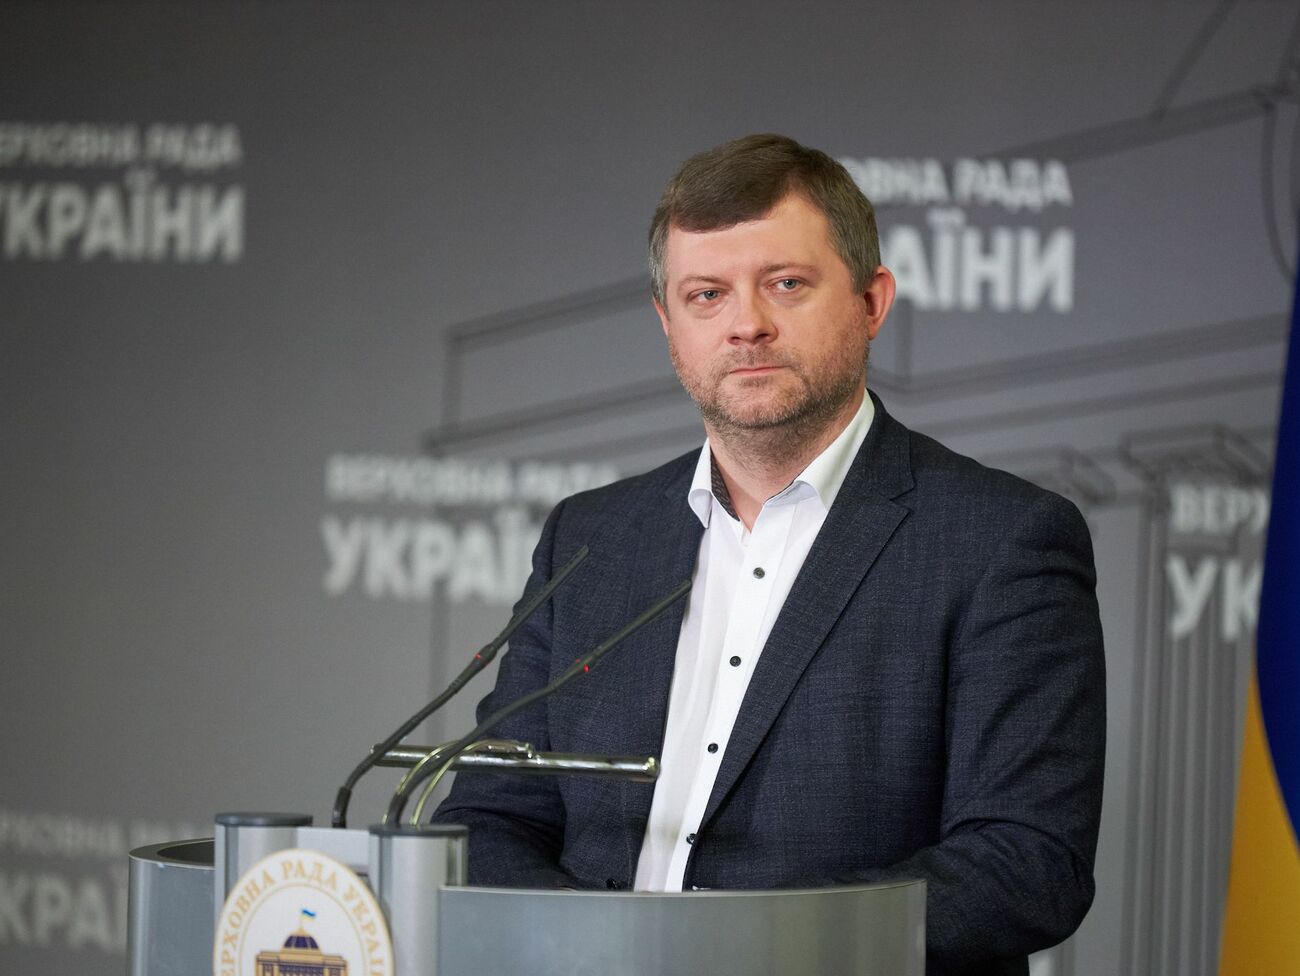 Корниенко заявил, что вопросы о “вагнергейте” должно задавать Госбюро расследований, а не журналисты